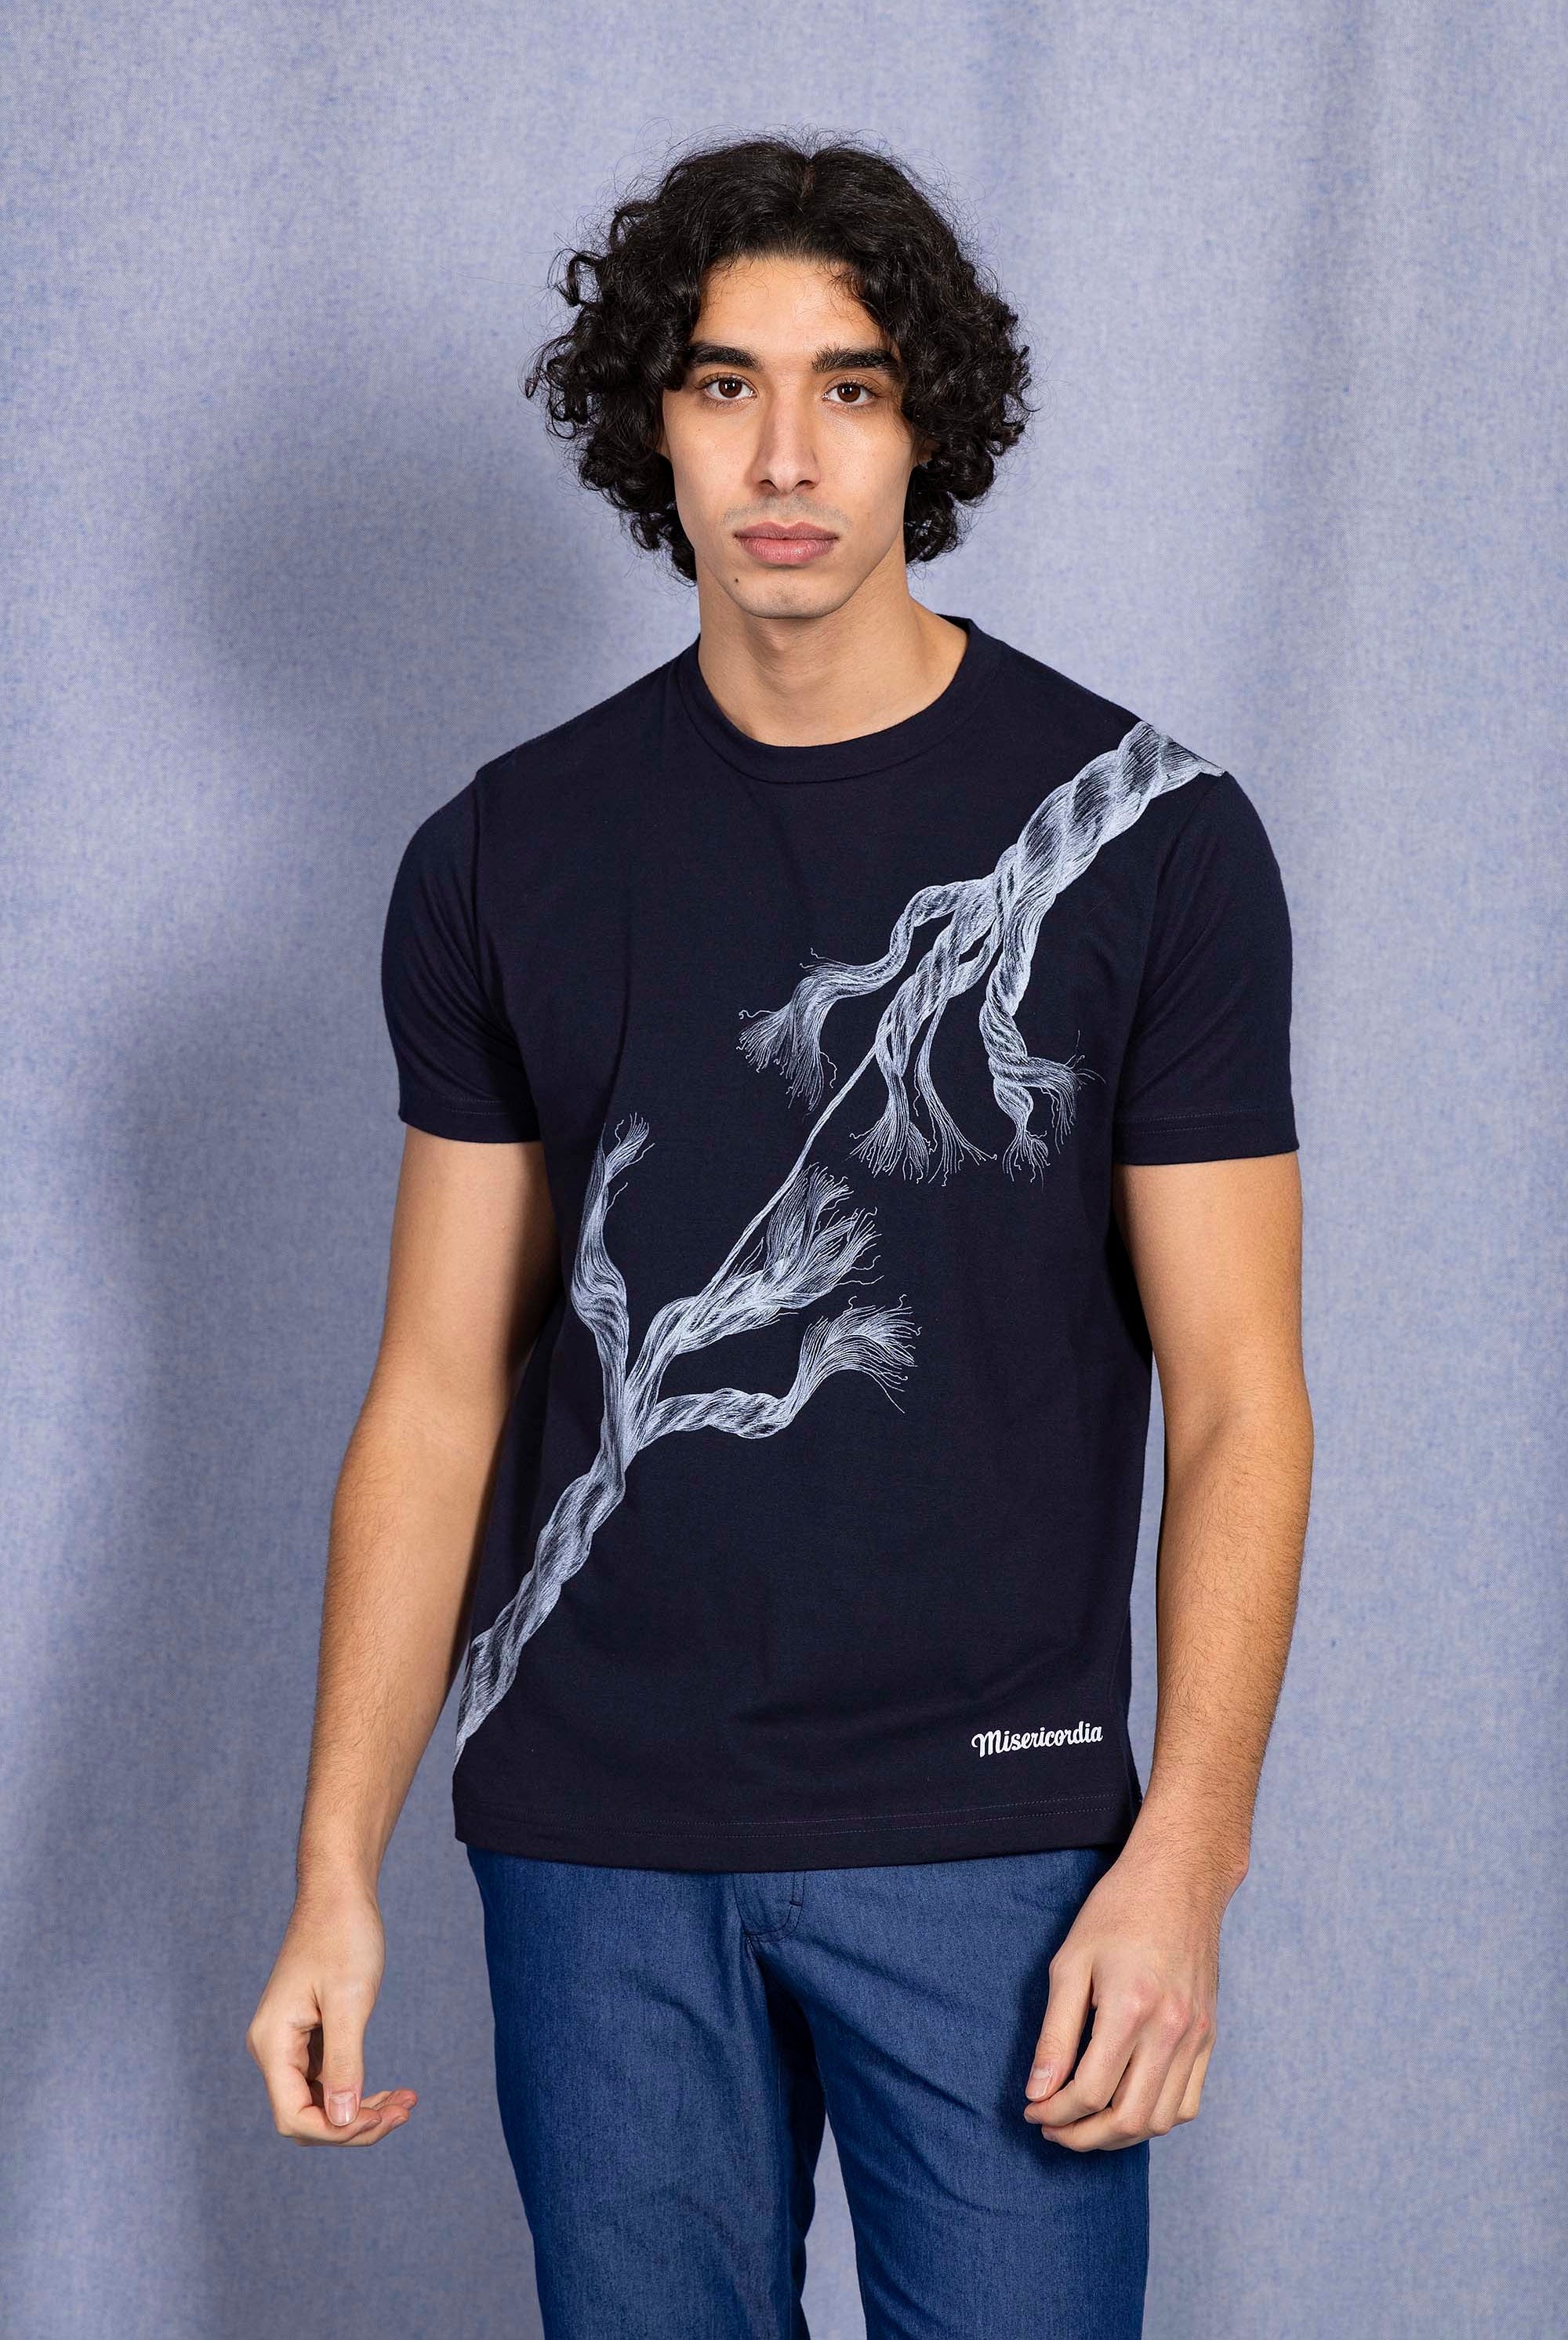 T-Shirt Mario Cuerda Bleu Marine t-shirts pour homme unis ou imprimés en coton agréable à porter